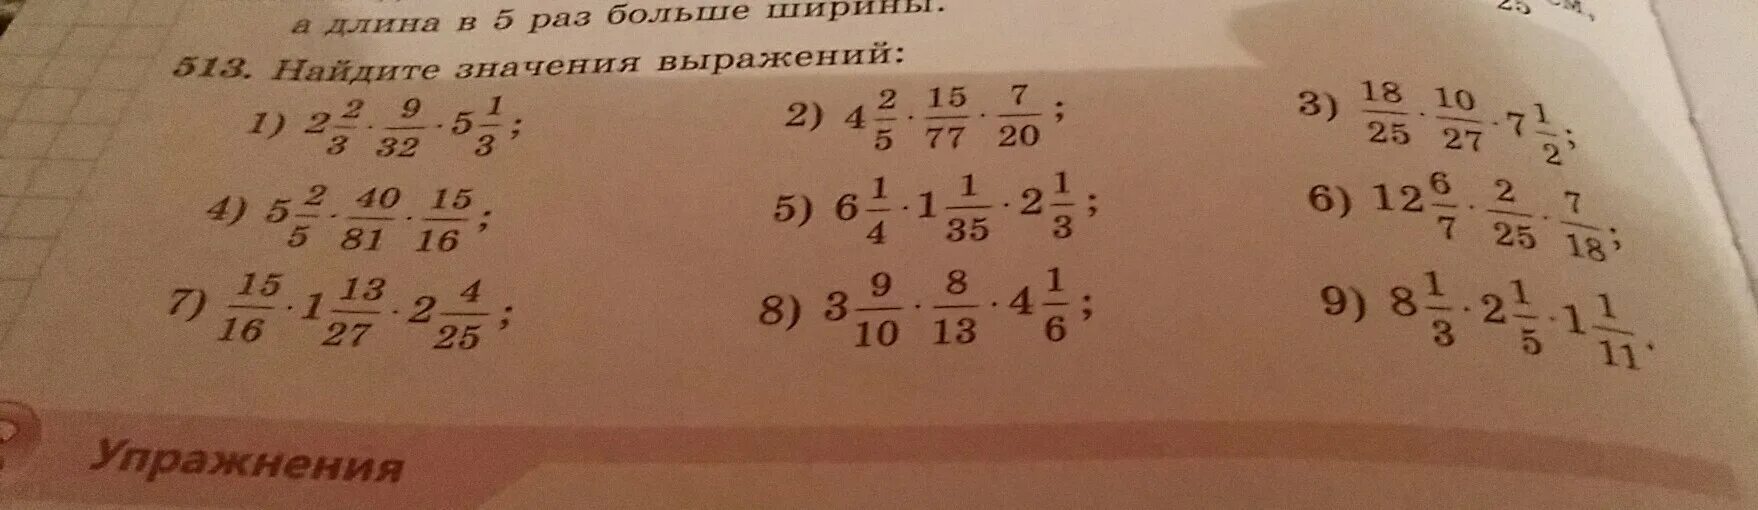 Найдите значение выражения 25 5 4. Найти значение выражения 4*1/3-1/2. Вычислите 2/25+1/4. Значение выражения 1 1 4 1 1 2. Вычислите 27 1/2 1/9 3/4 4/3.